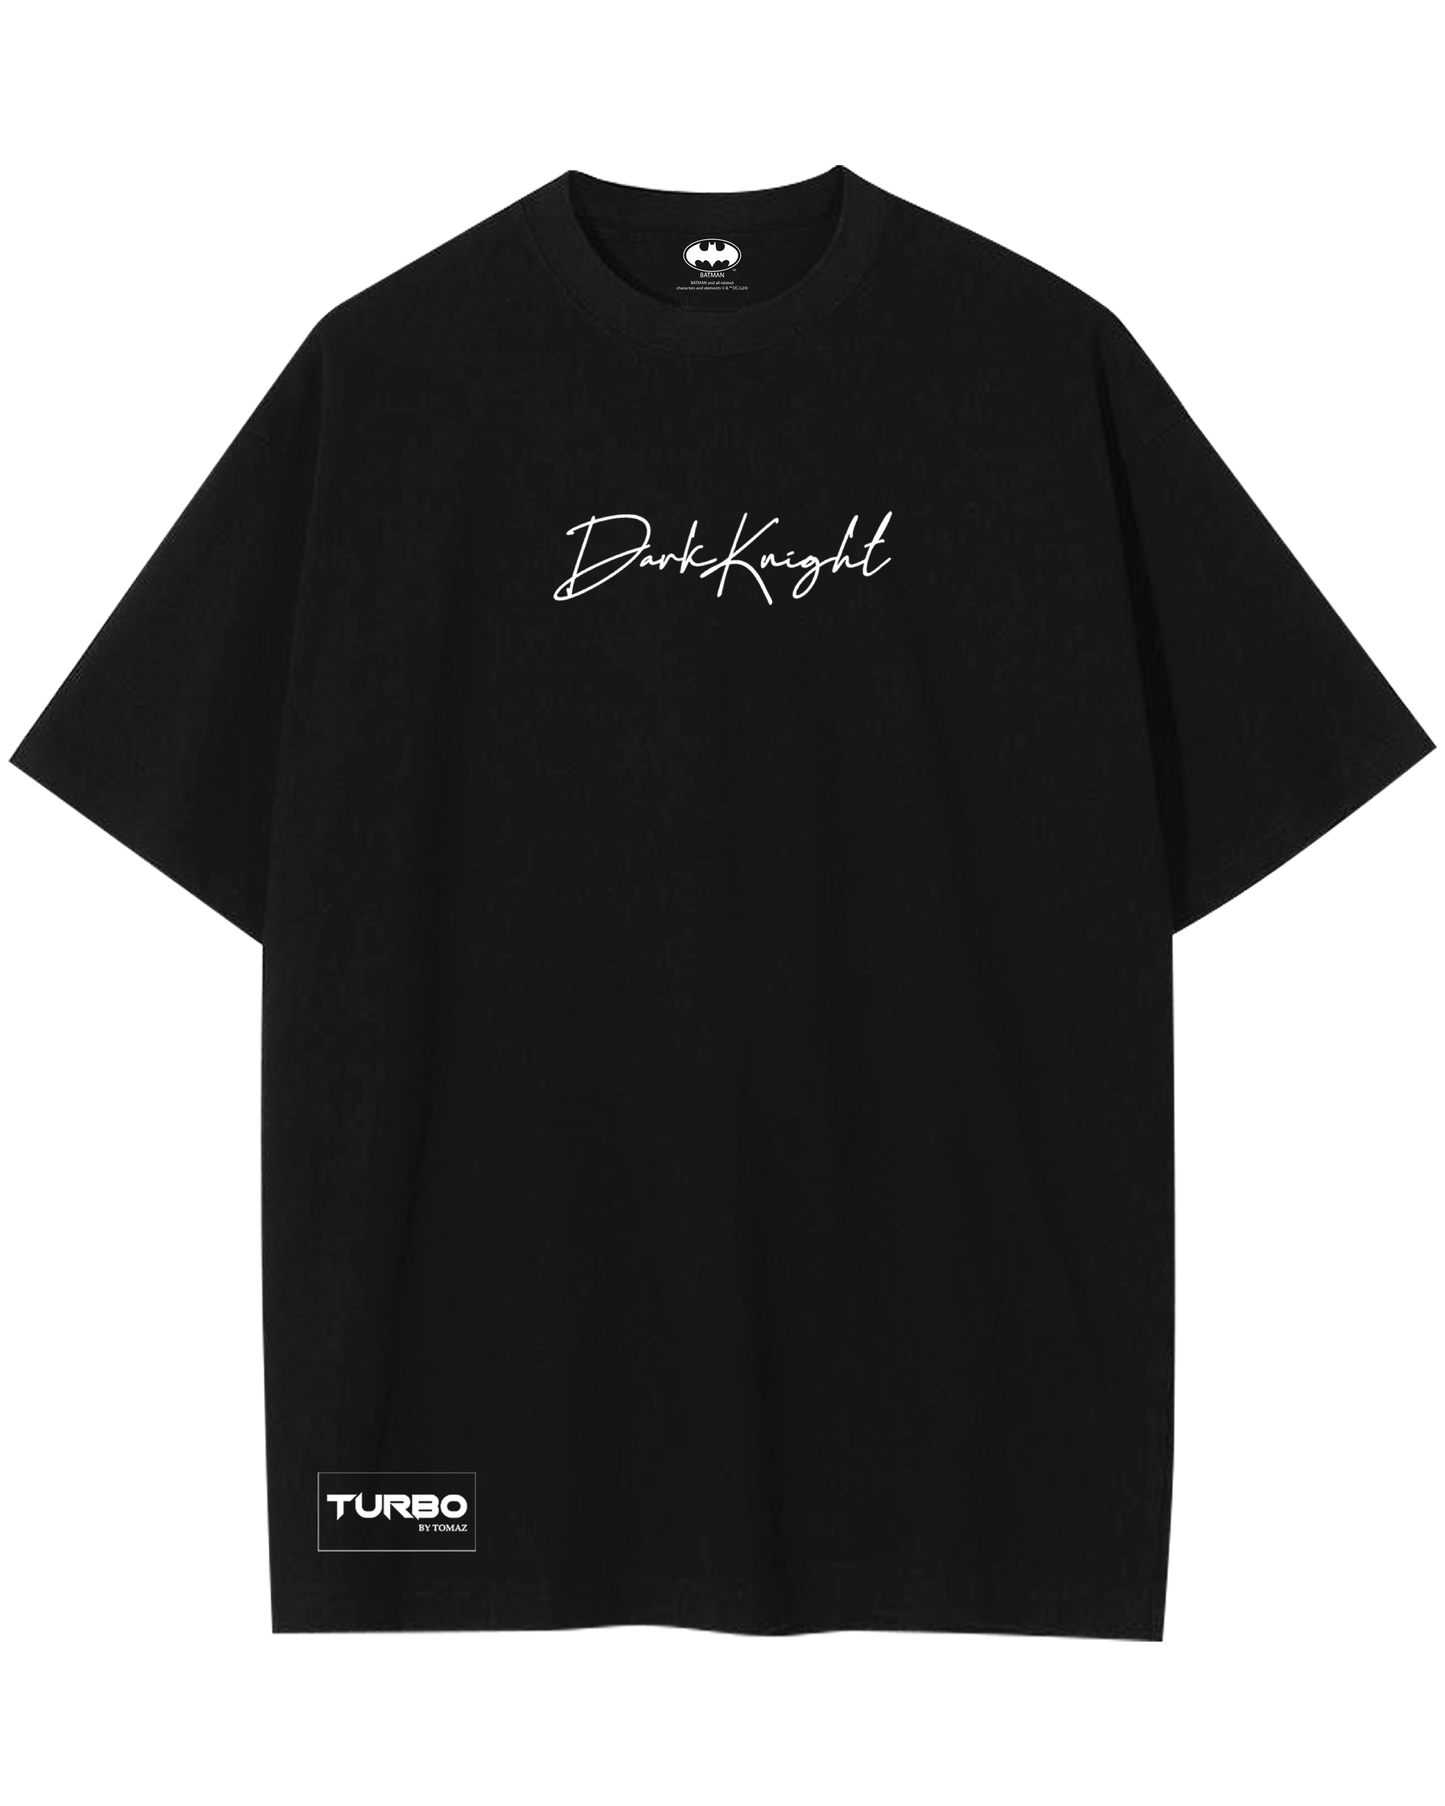 Turbo Batman CC-1290 Over-sized T-shirt (Black)